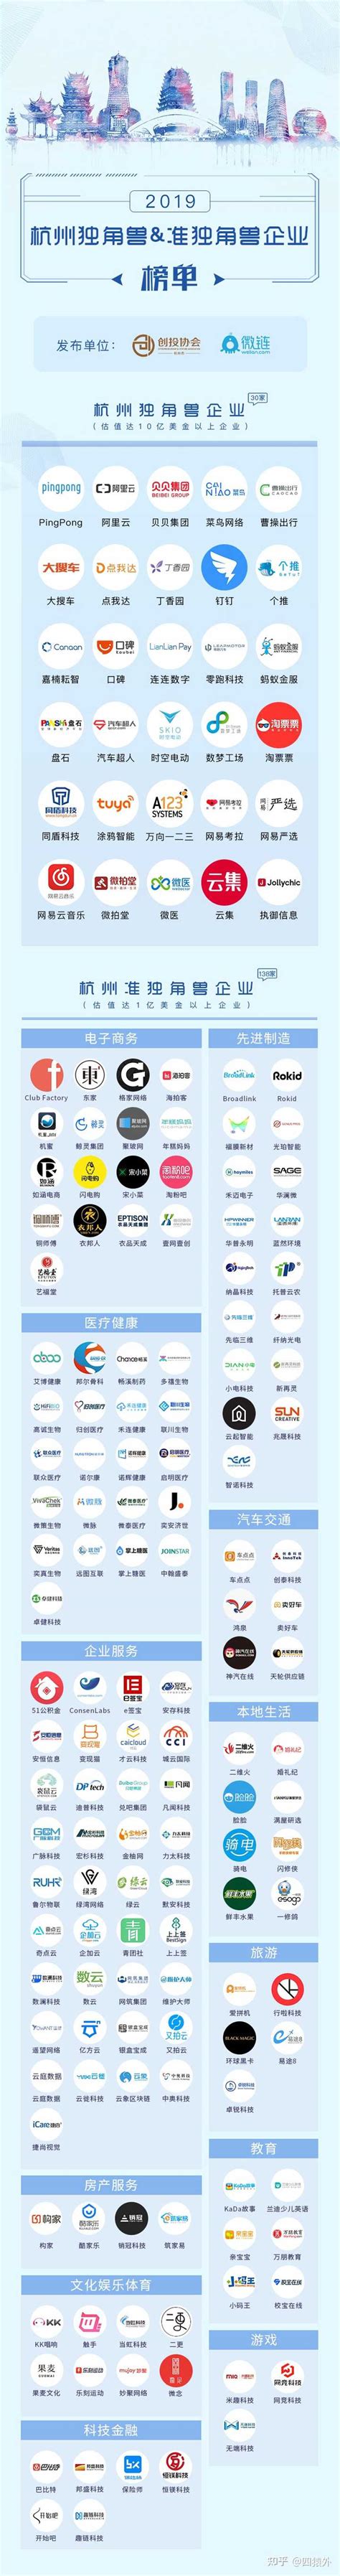 杭州有哪些大型互联网公司？ - 知乎